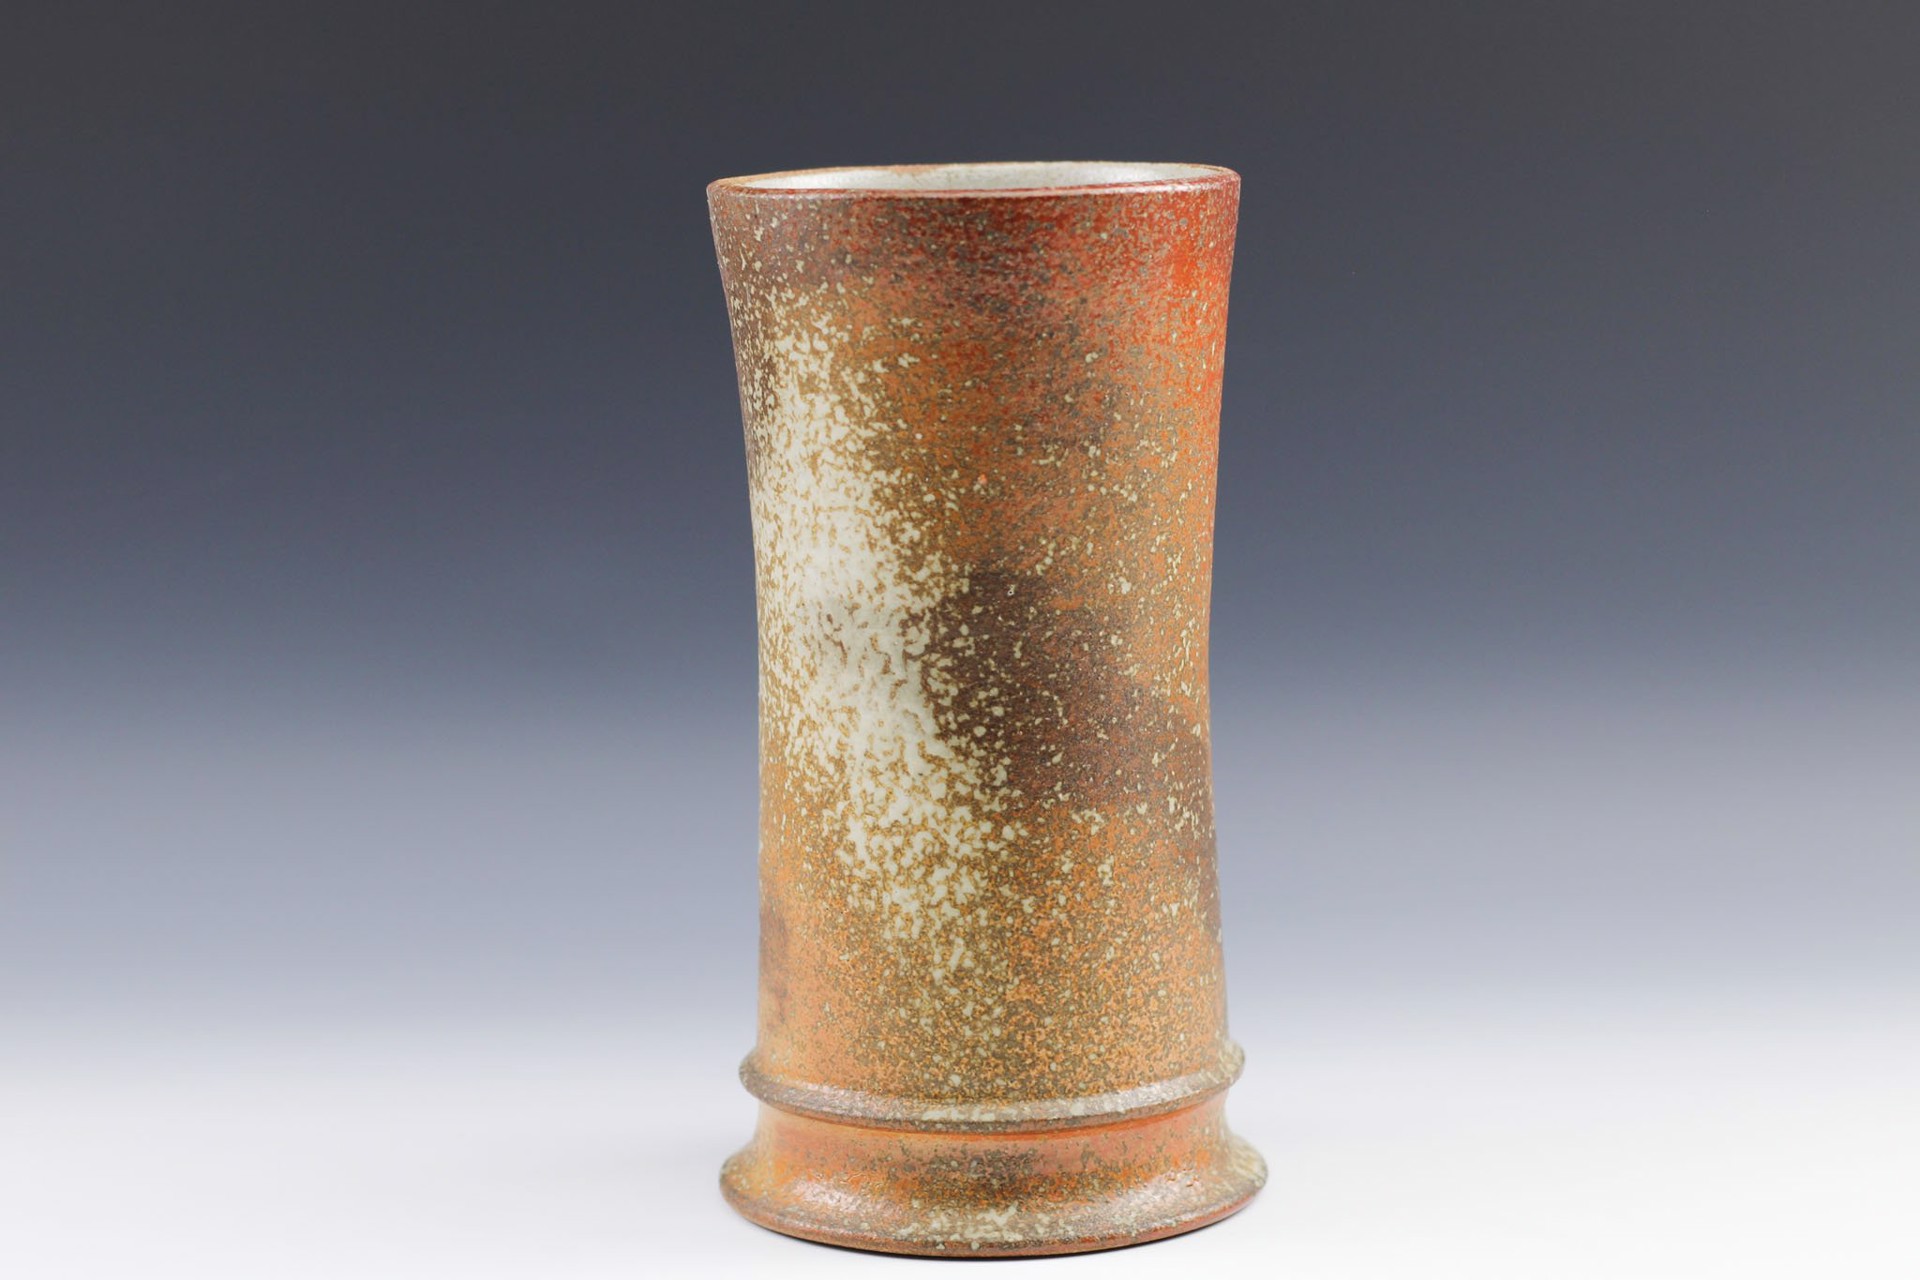 Vase by George Lowe